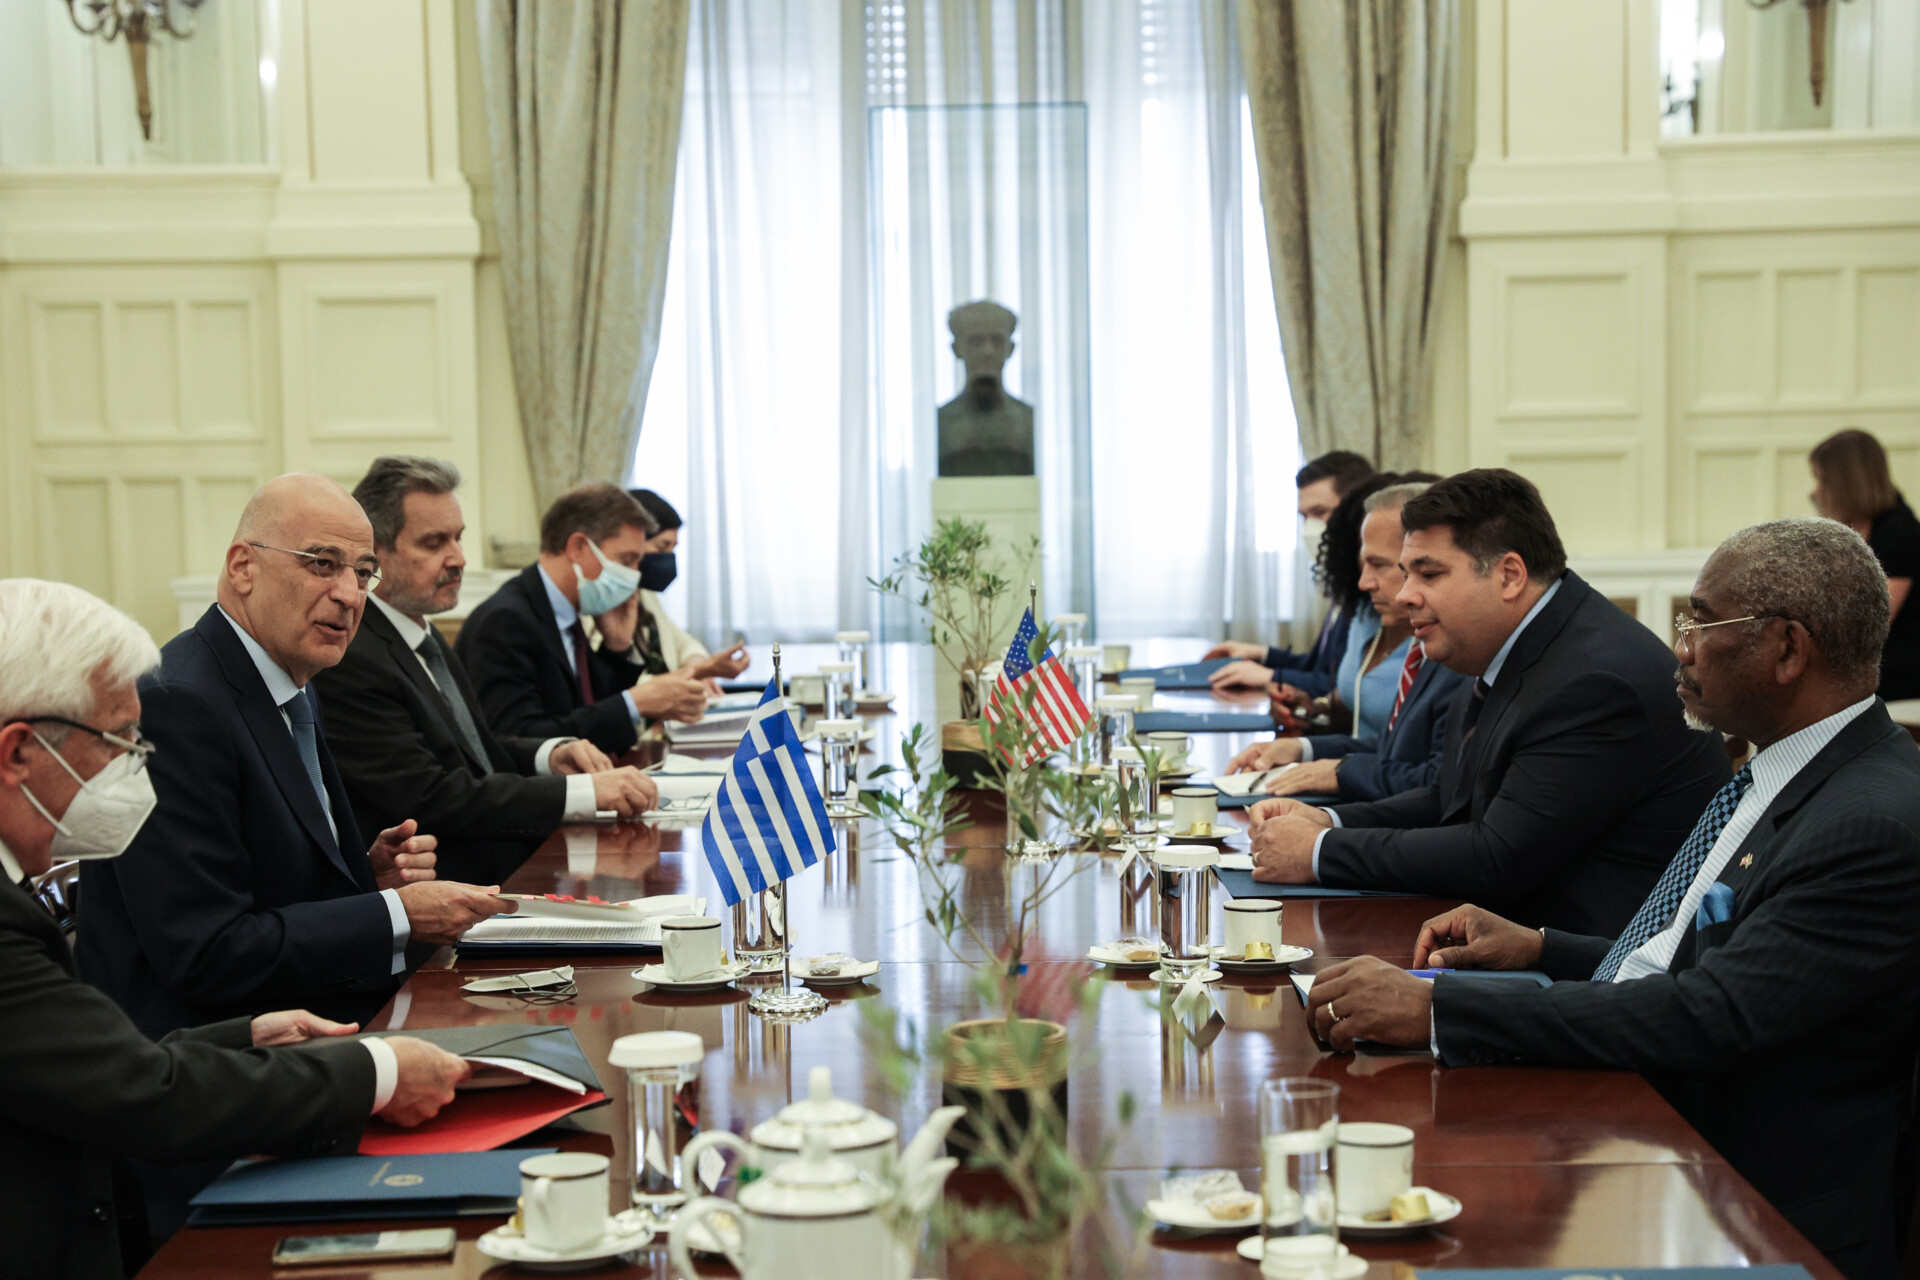 Συνάντηση του υπουργού Εξωτερικών, Νίκου Δένδια, με αντιπροσωπεία μελών της Επιτροπής Εξωτερικών Υποθέσεων της Βουλής των Αντιπροσώπων των Η.Π.Α © Ευρωκίνηση